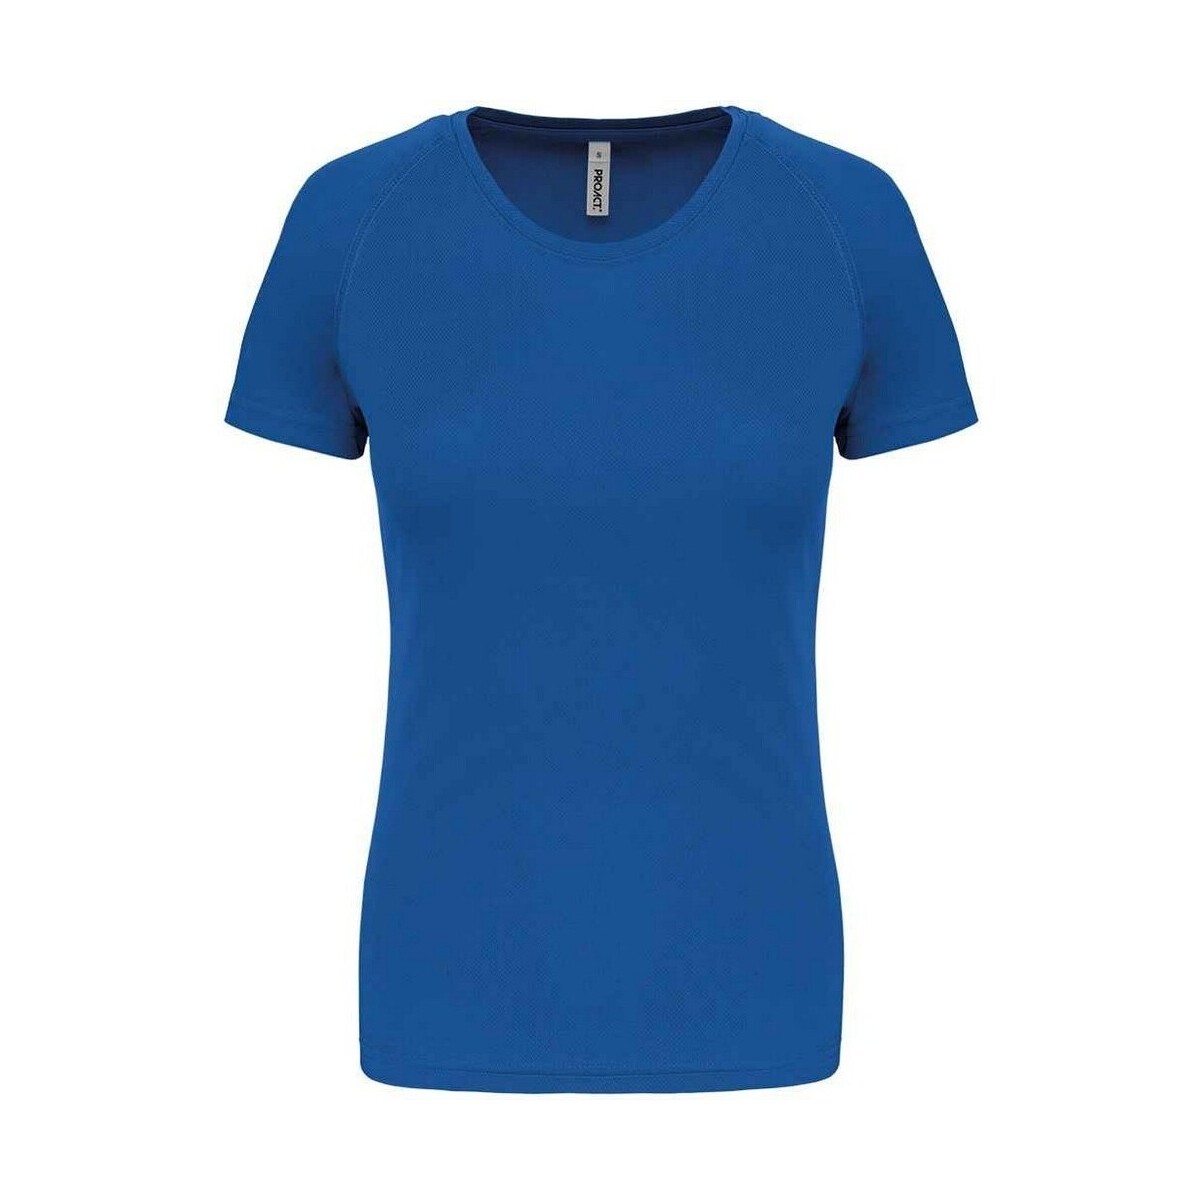 Vêtements Femme T-shirts manches longues Proact PC6776 Bleu